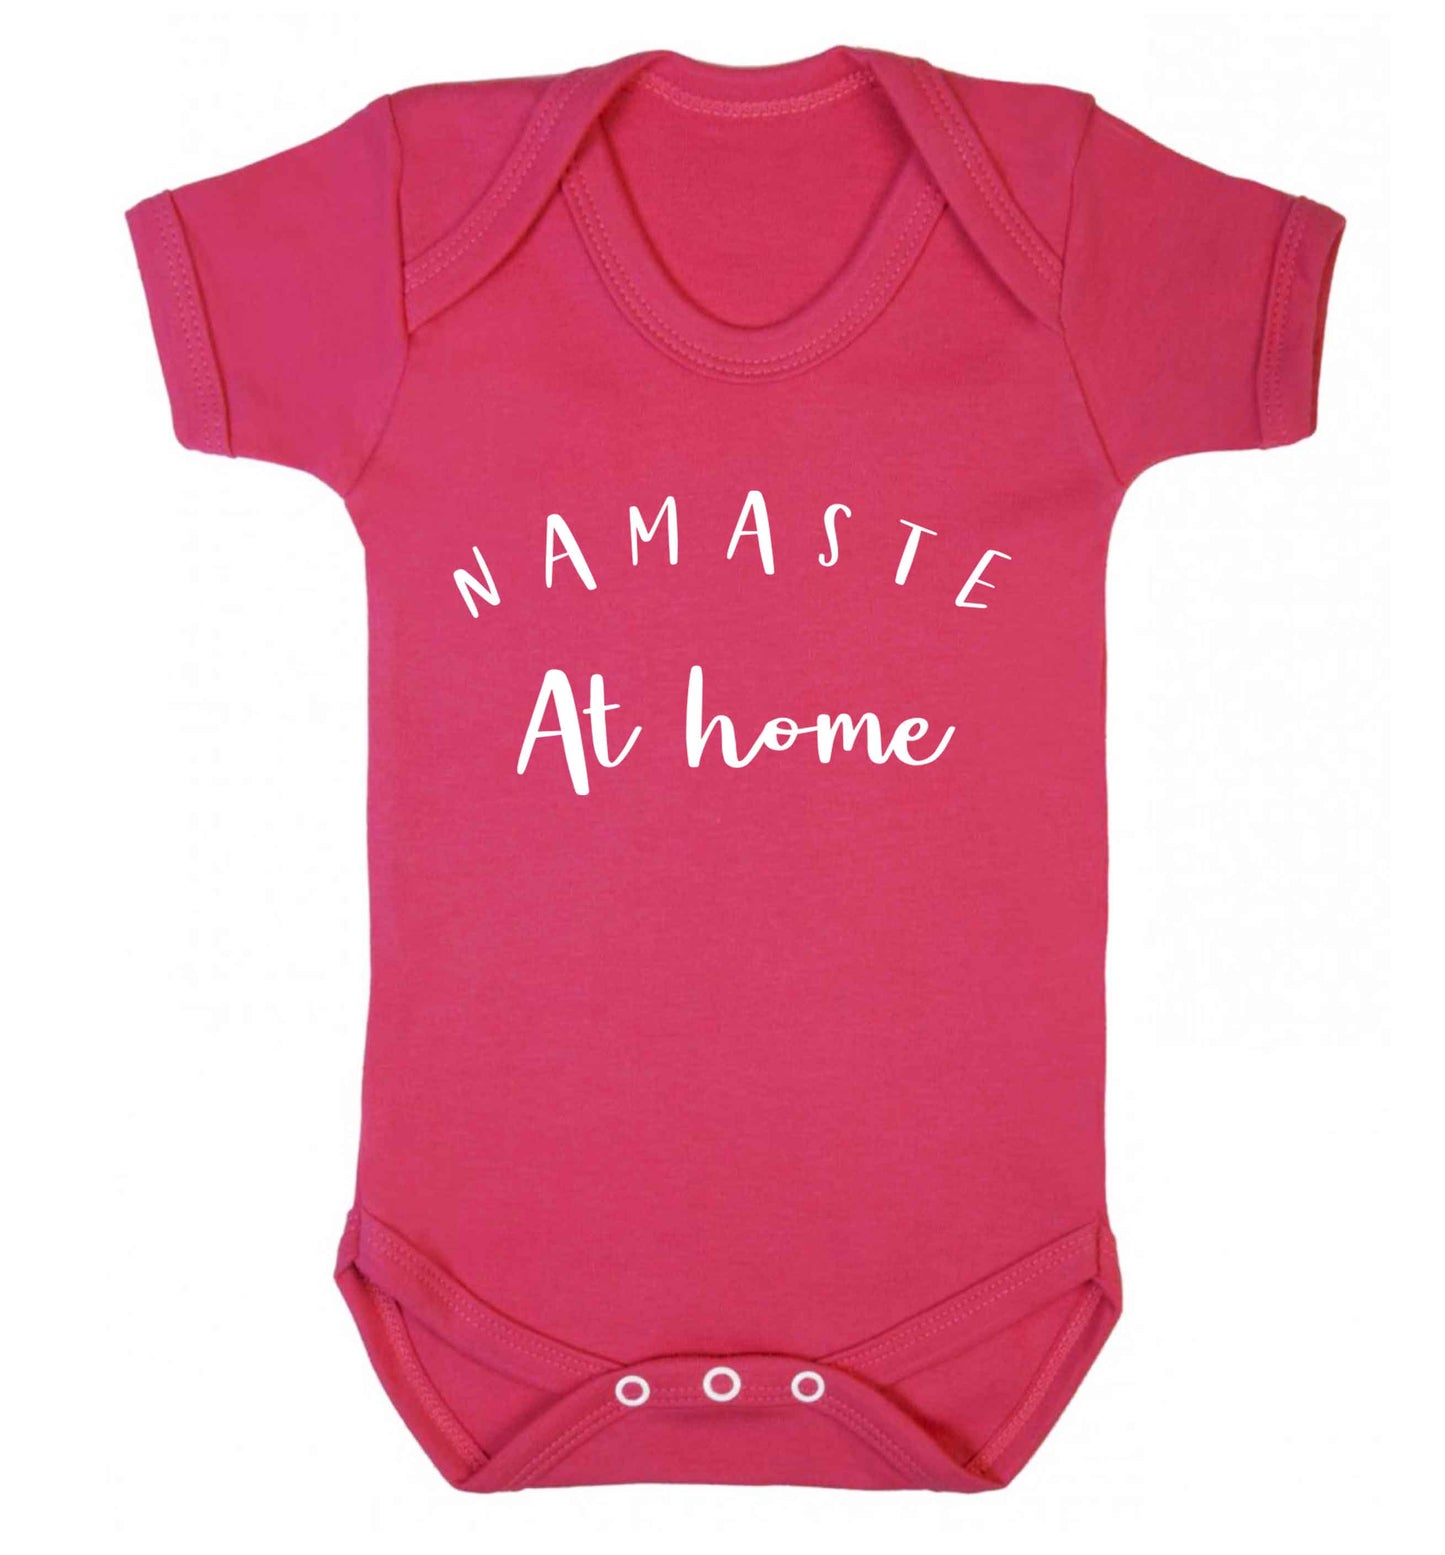 Namaste at home Baby Vest dark pink 18-24 months